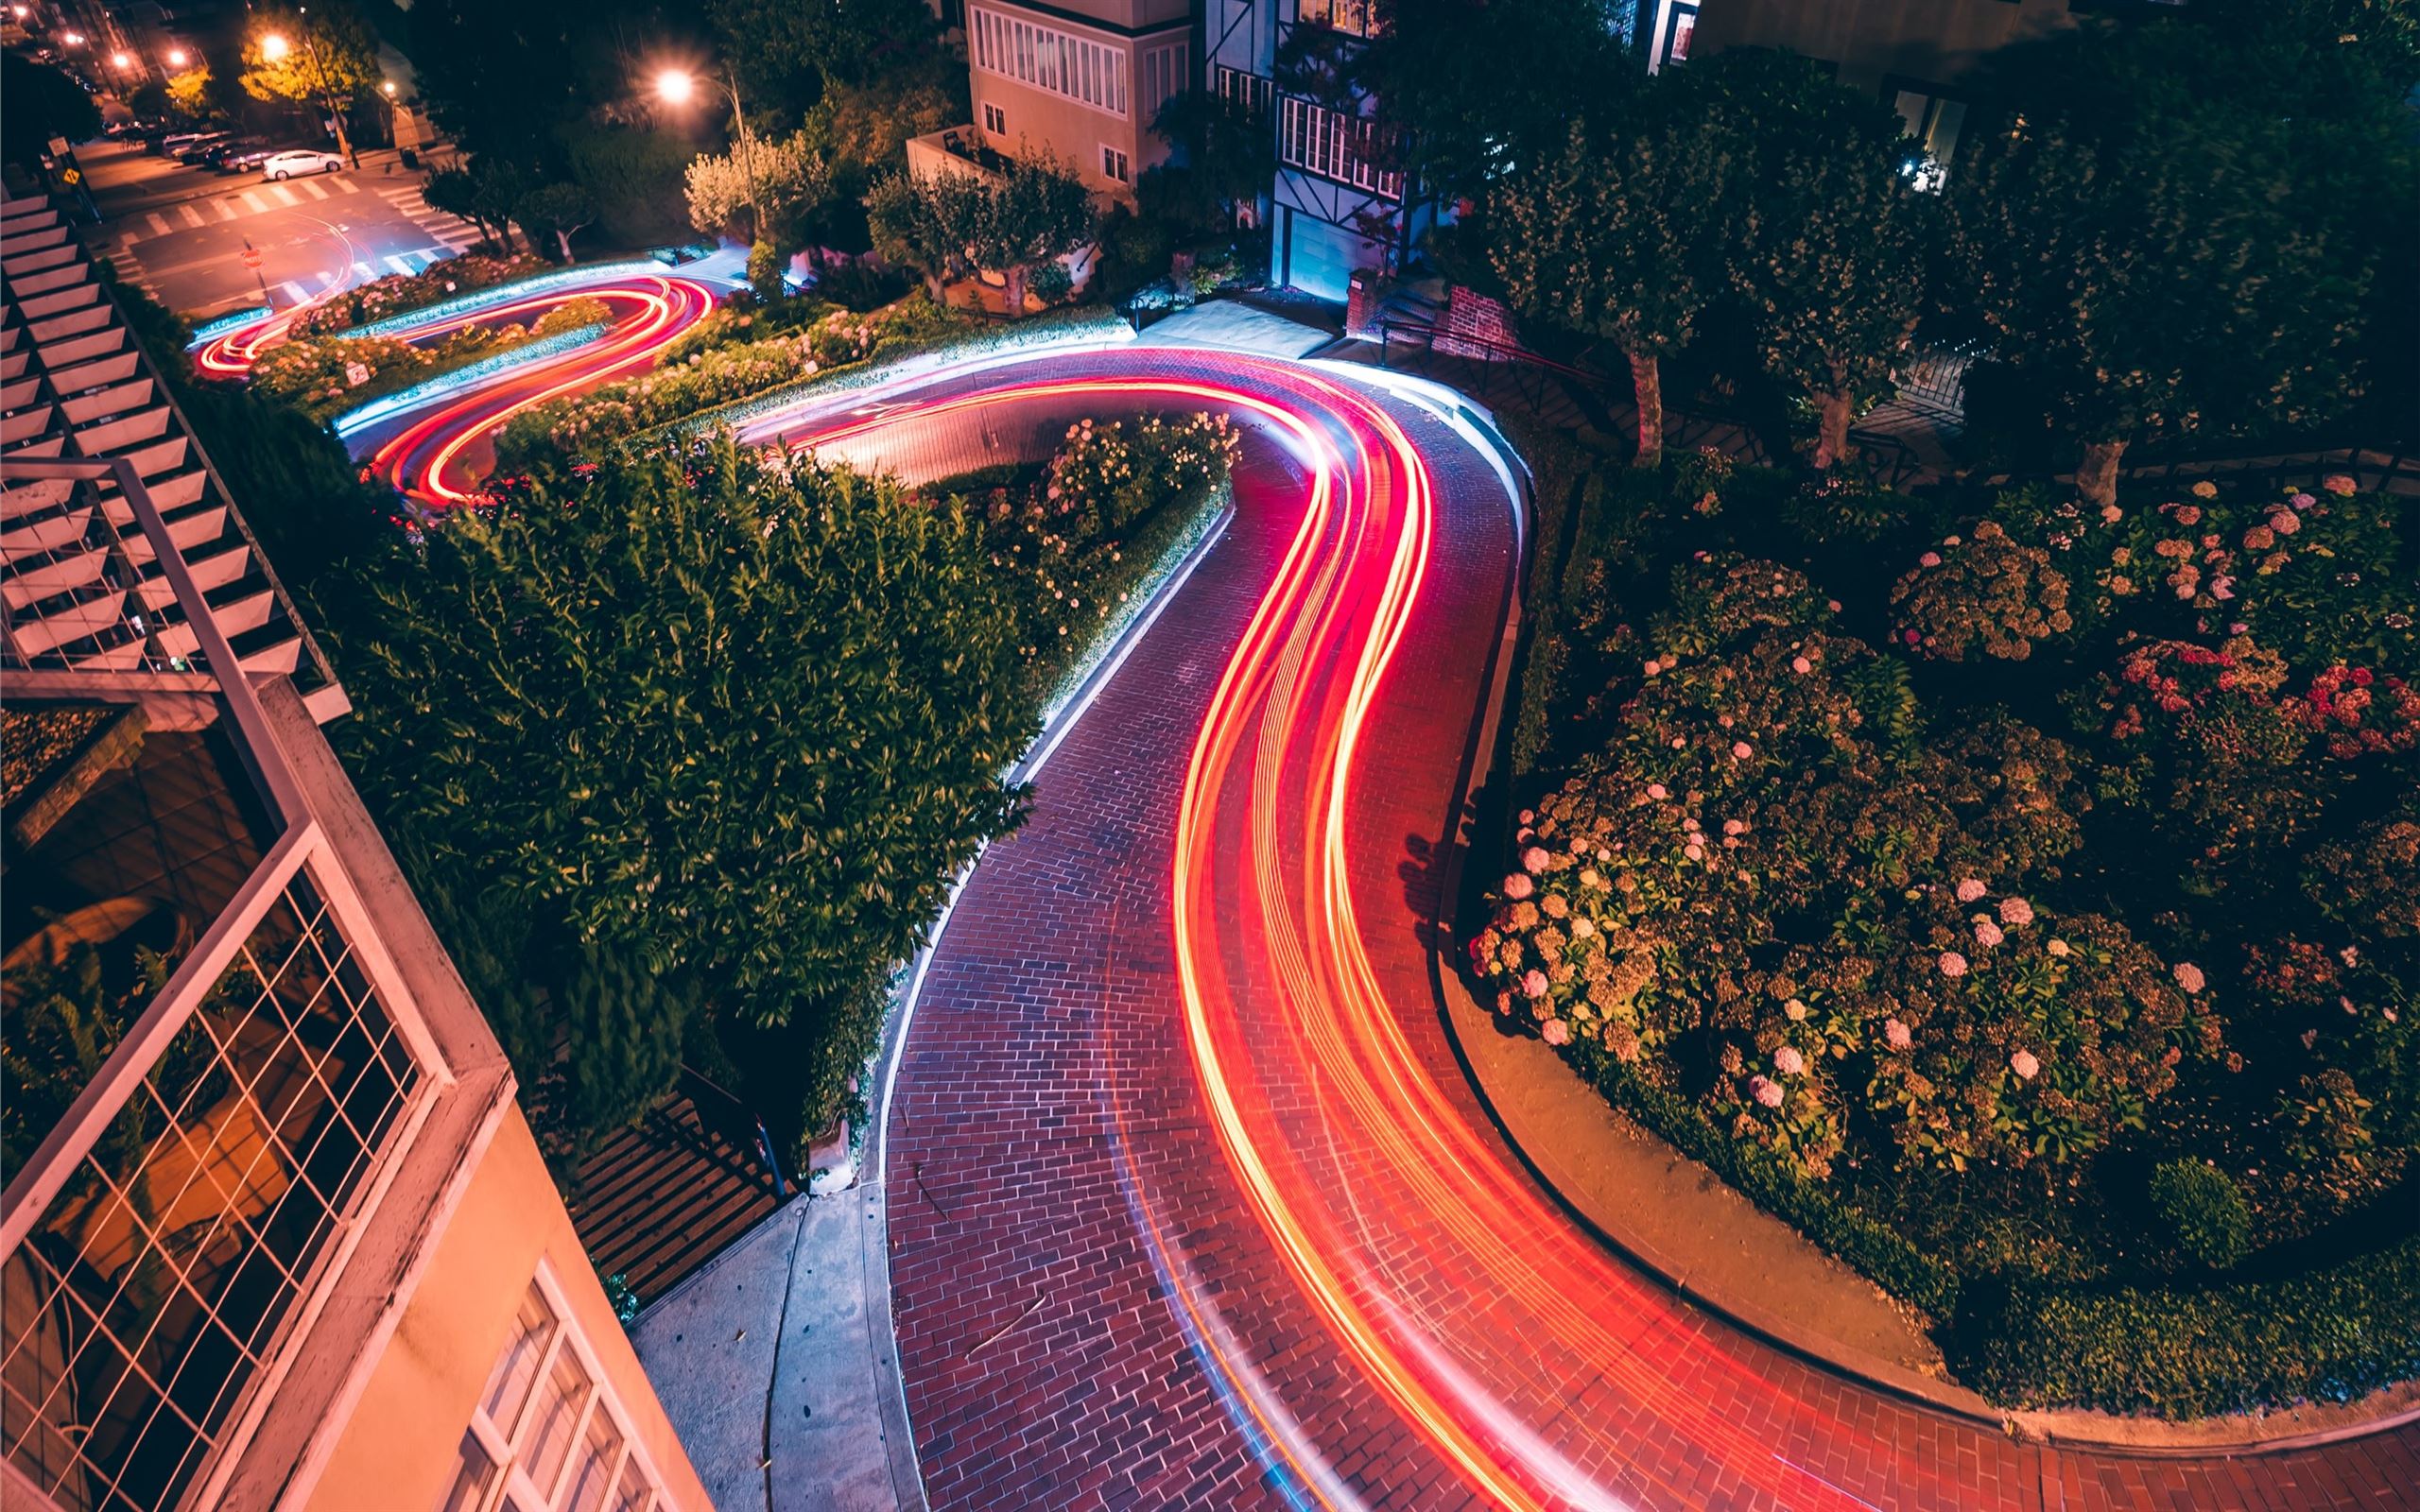 Lombard Street. Ташкент дорога ночь. Фото на длинной выдержки с цветной гирляндой. Fire Road. Расходный материал ночной скакать развеянный